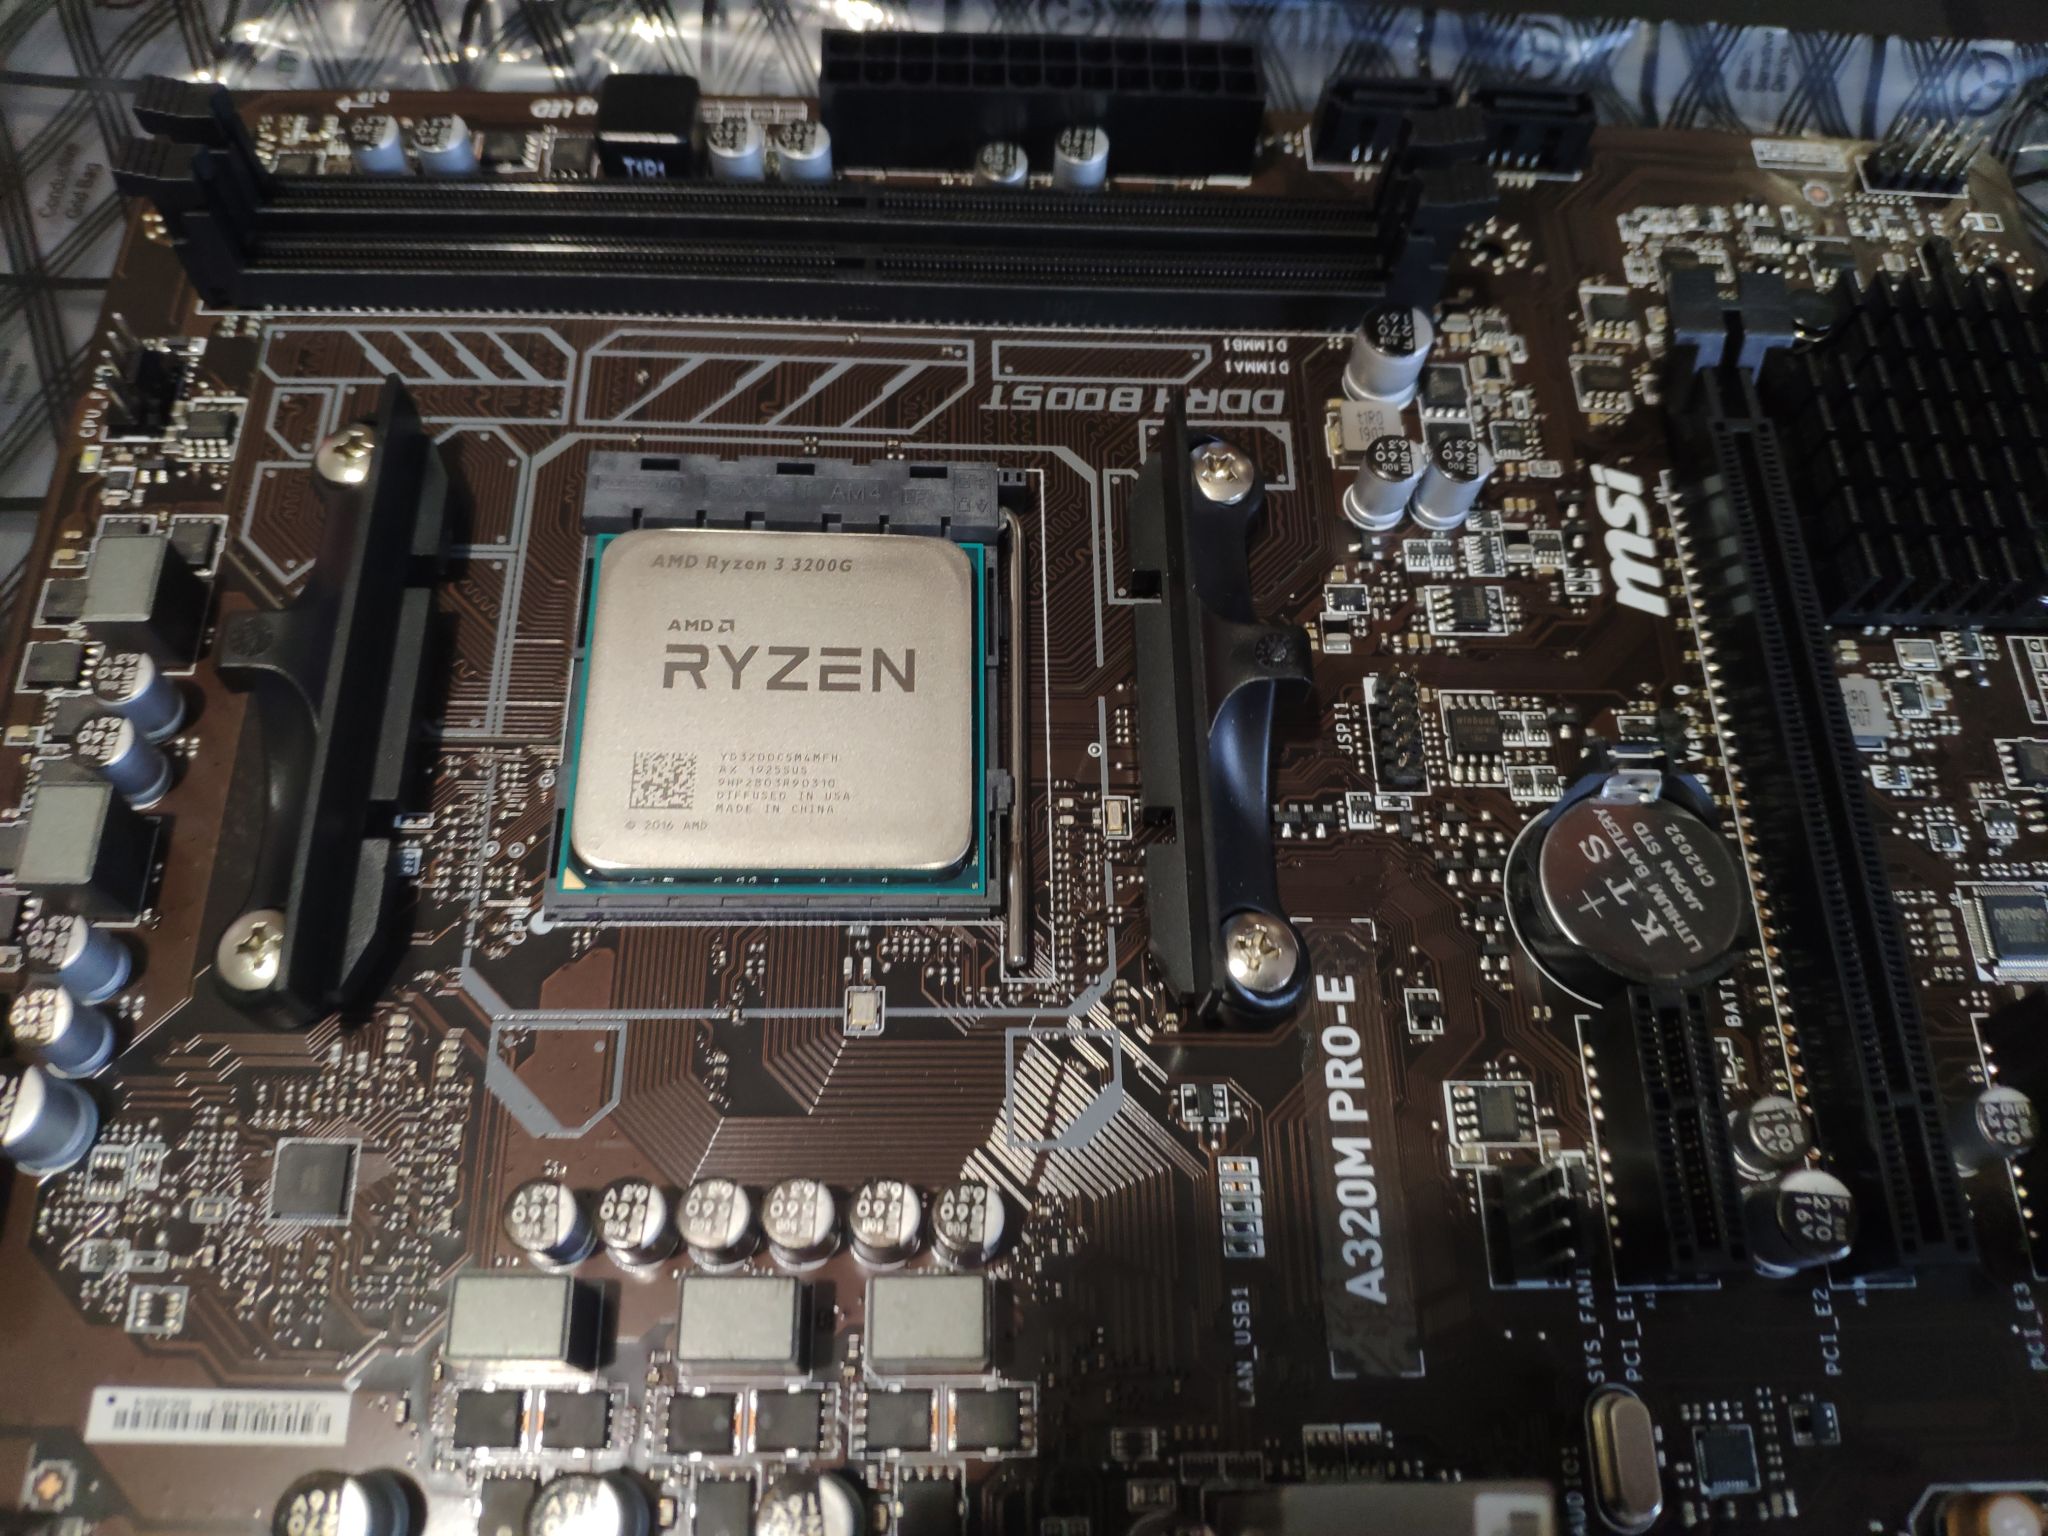 3 pro 3200g. Ryzen 3 3200g. Процессор AMD Ryzen 3 3200g. Процессор AMD Ryzen 3 3200g am4. AMD Ryzen 3 Pro 3200g.